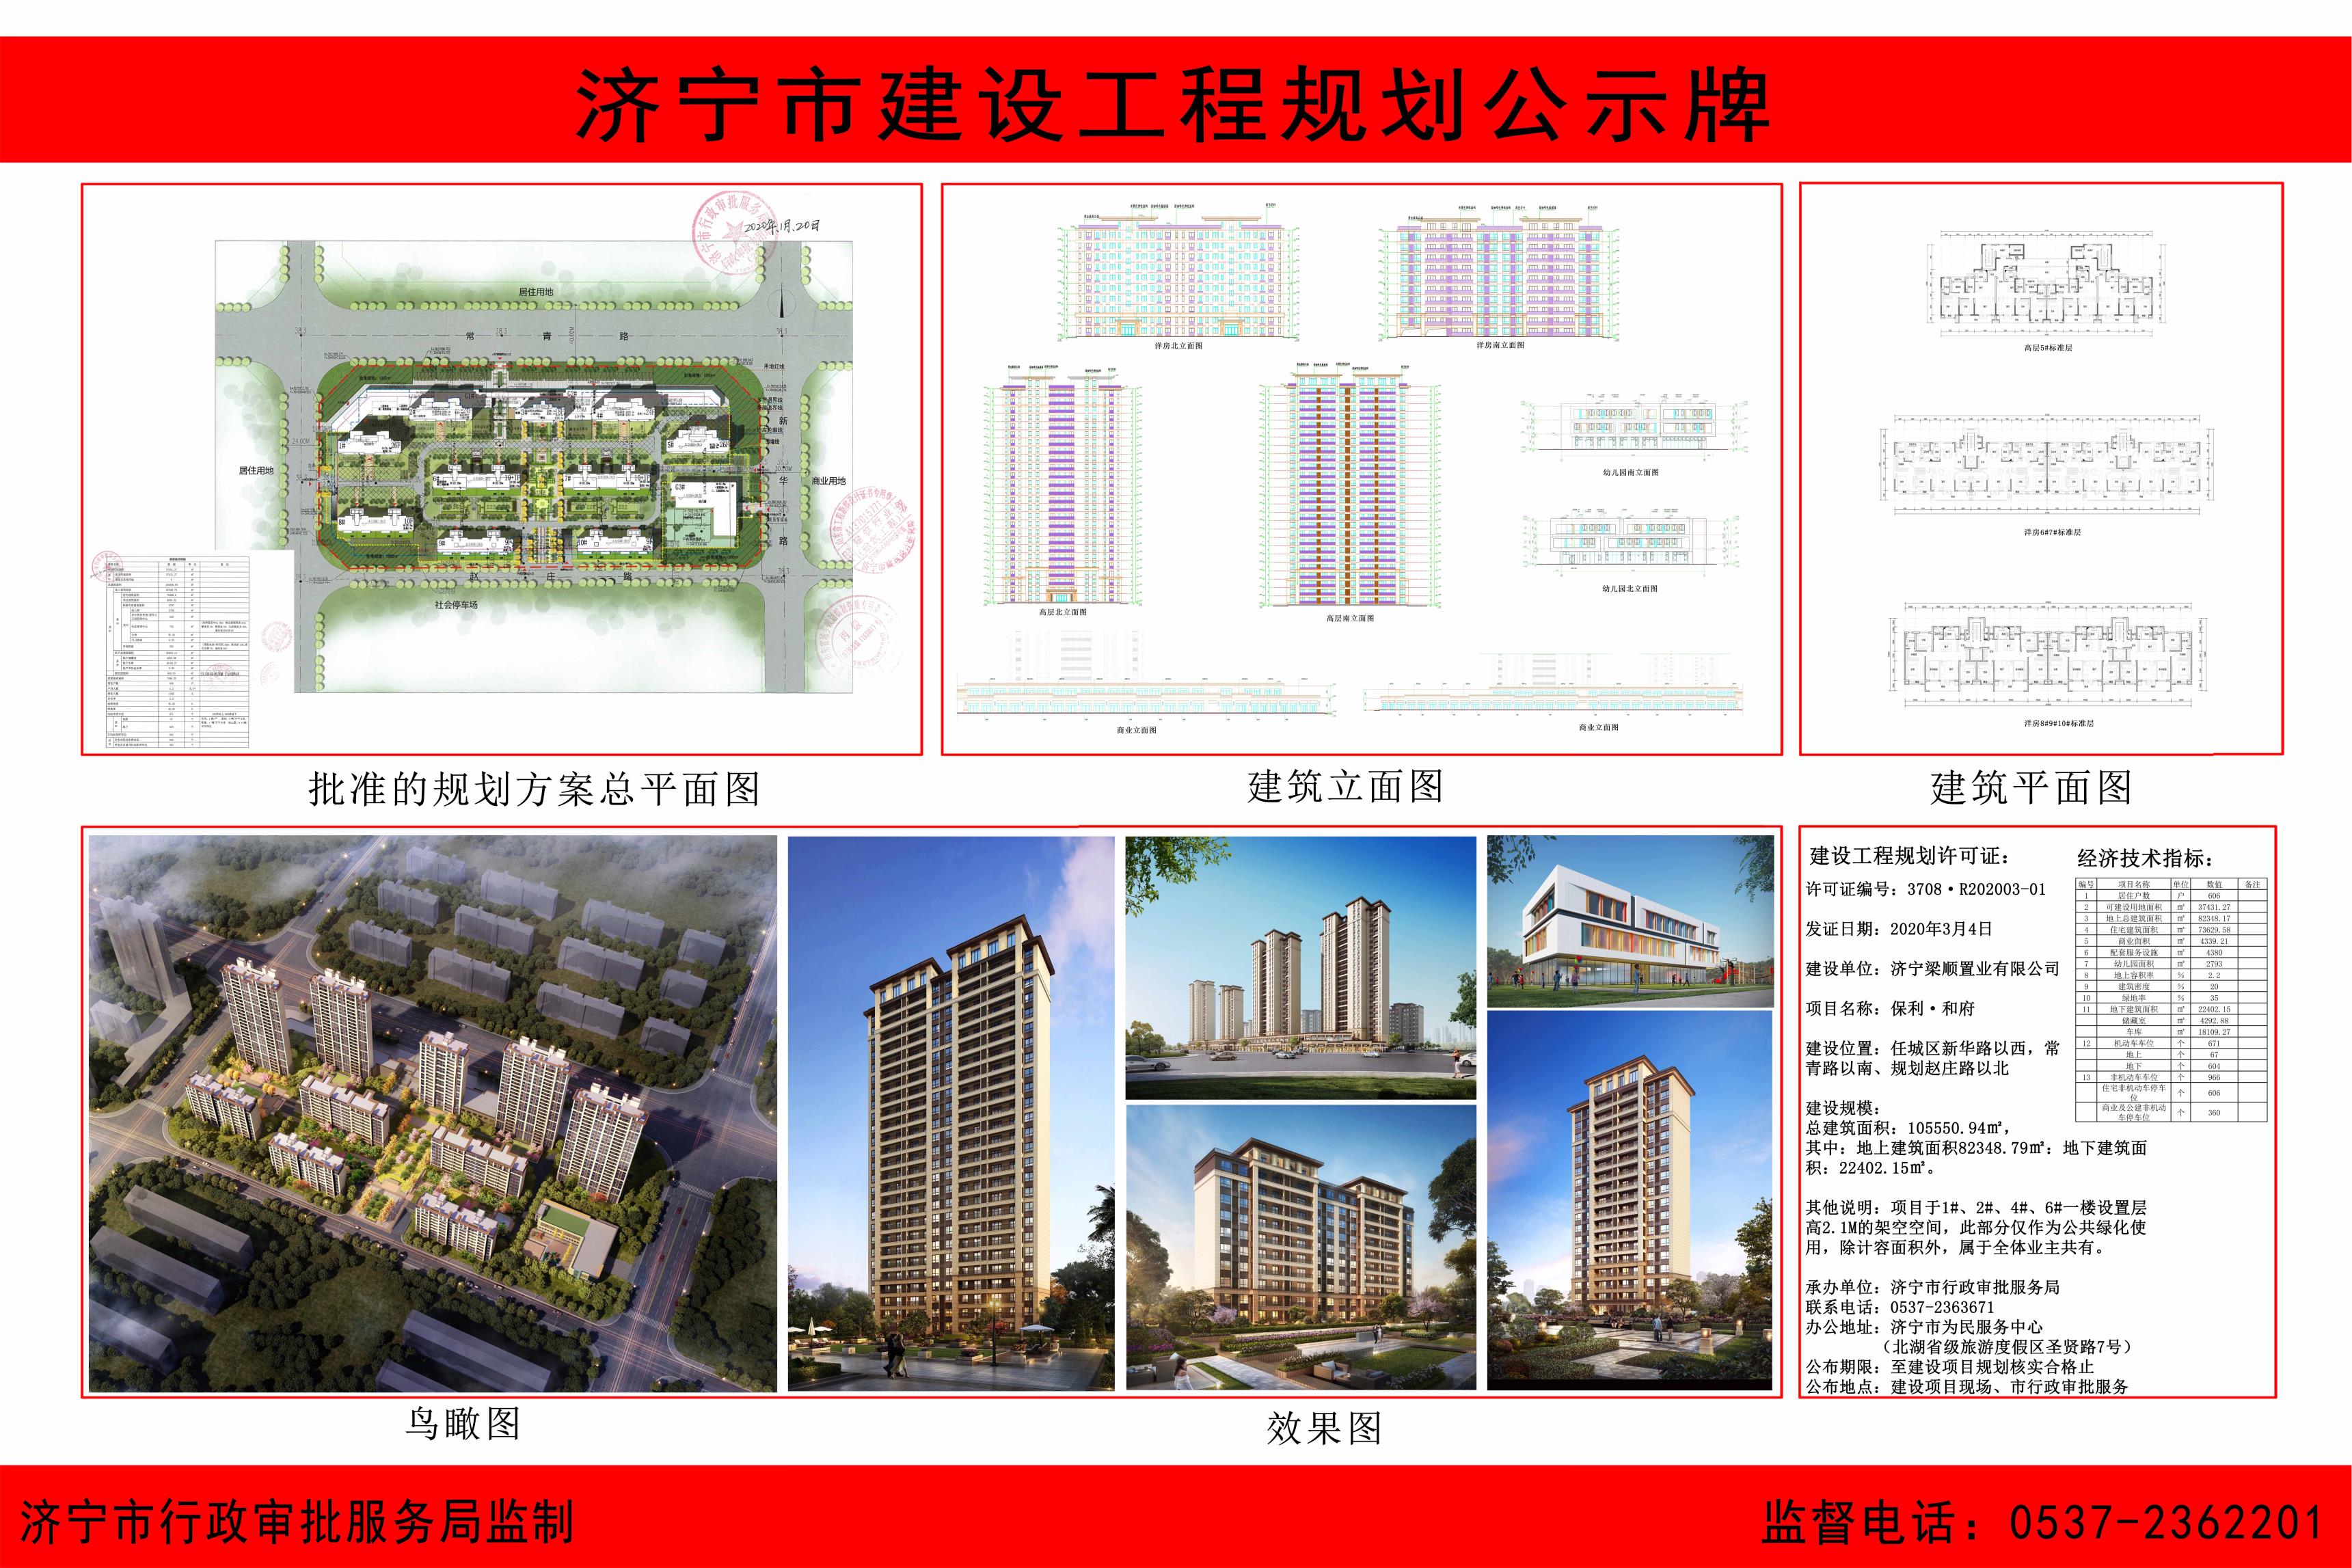 济宁市行政审批服务局 工程建设项目专栏 保利·和府